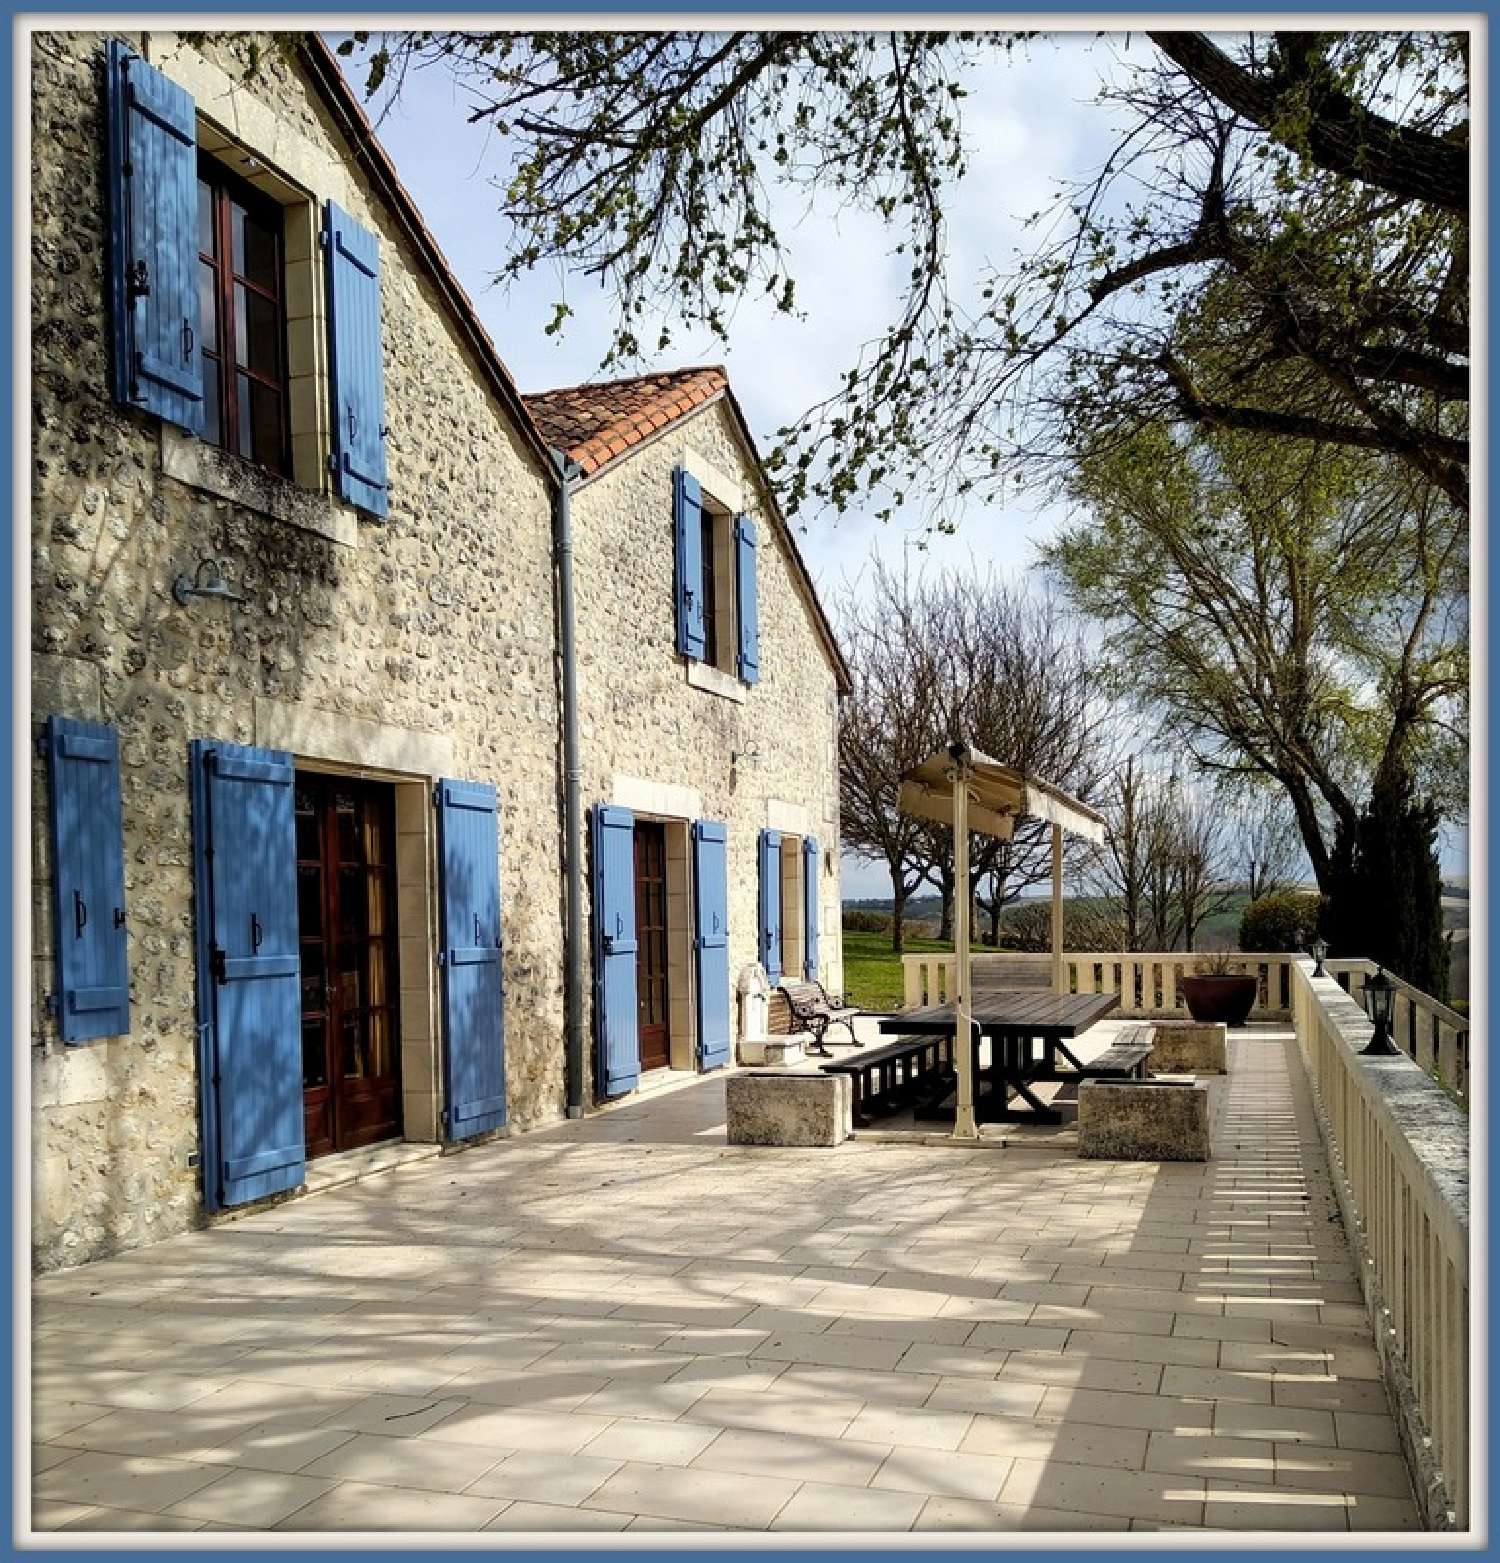  kaufen Landgut Villebois-Lavalette Charente 2